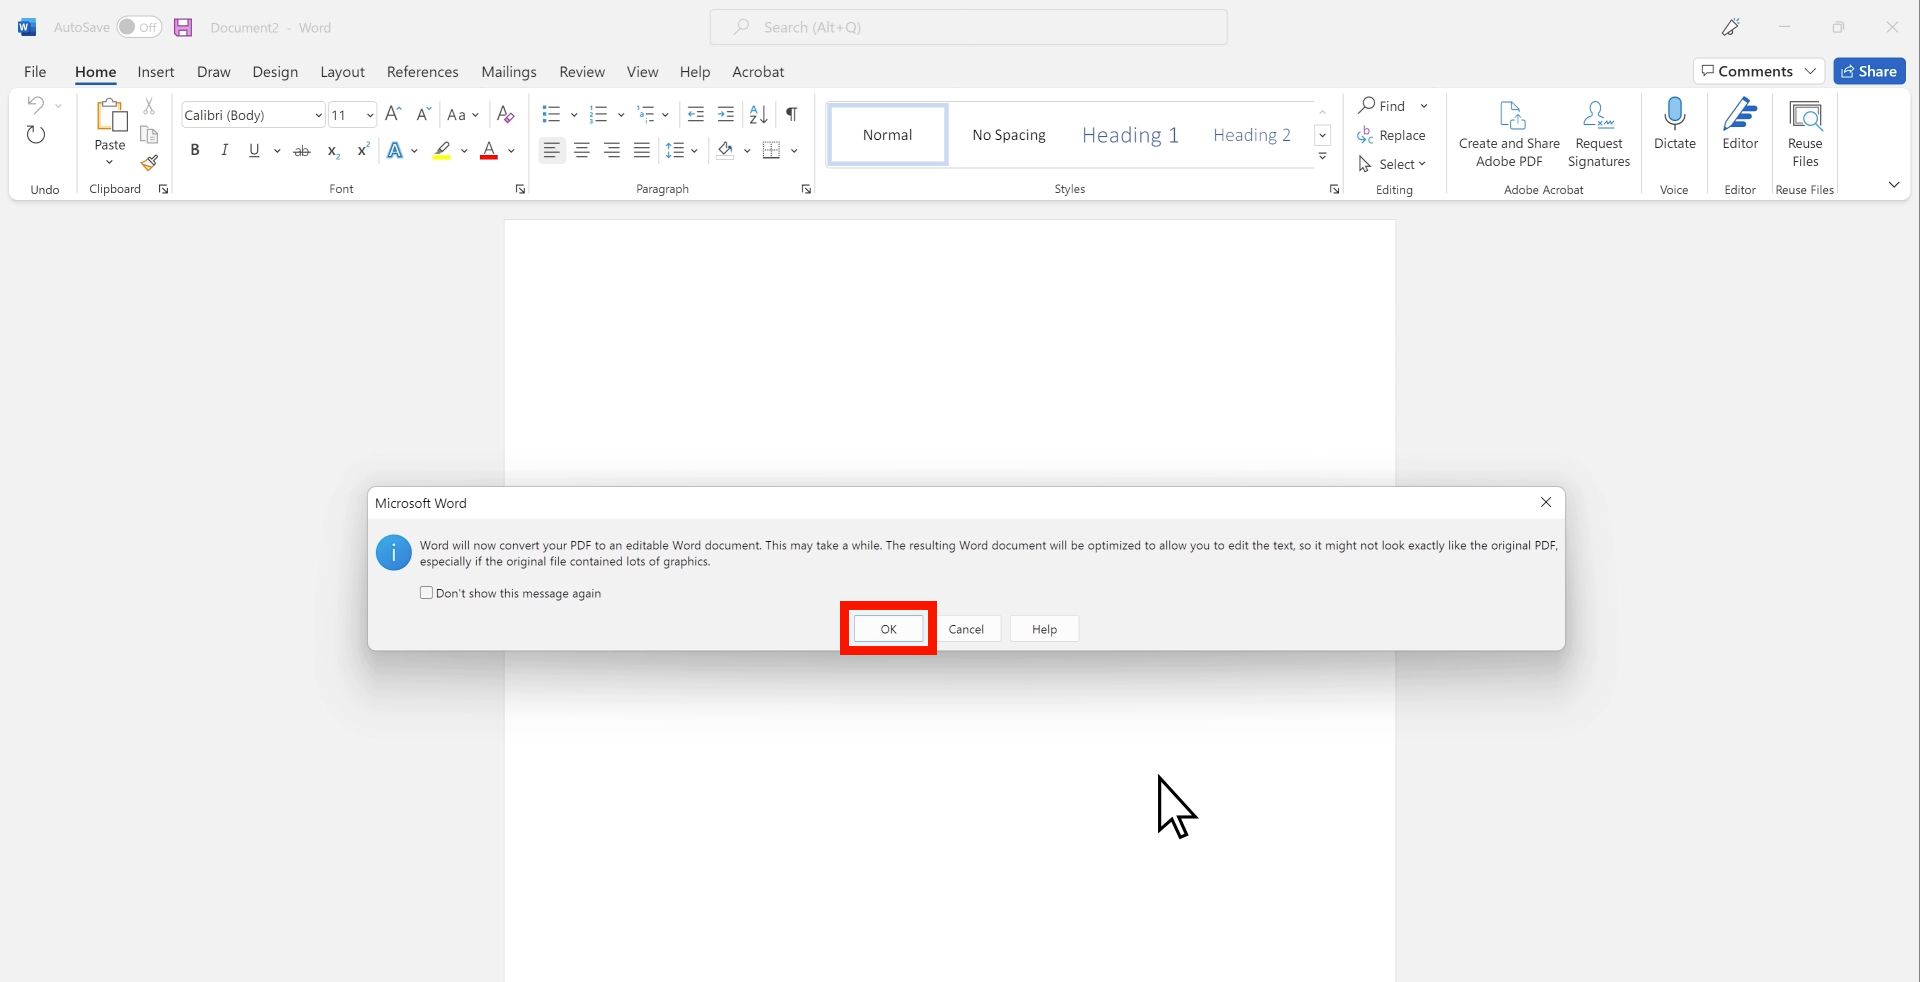 A imagem mostra uma notificação no Microsoft Word indicando que um PDF será convertido em um documento Word editável, com o cuidado de que a conversão pode não manter o layout original, especialmente com gráficos com OK selecionado.